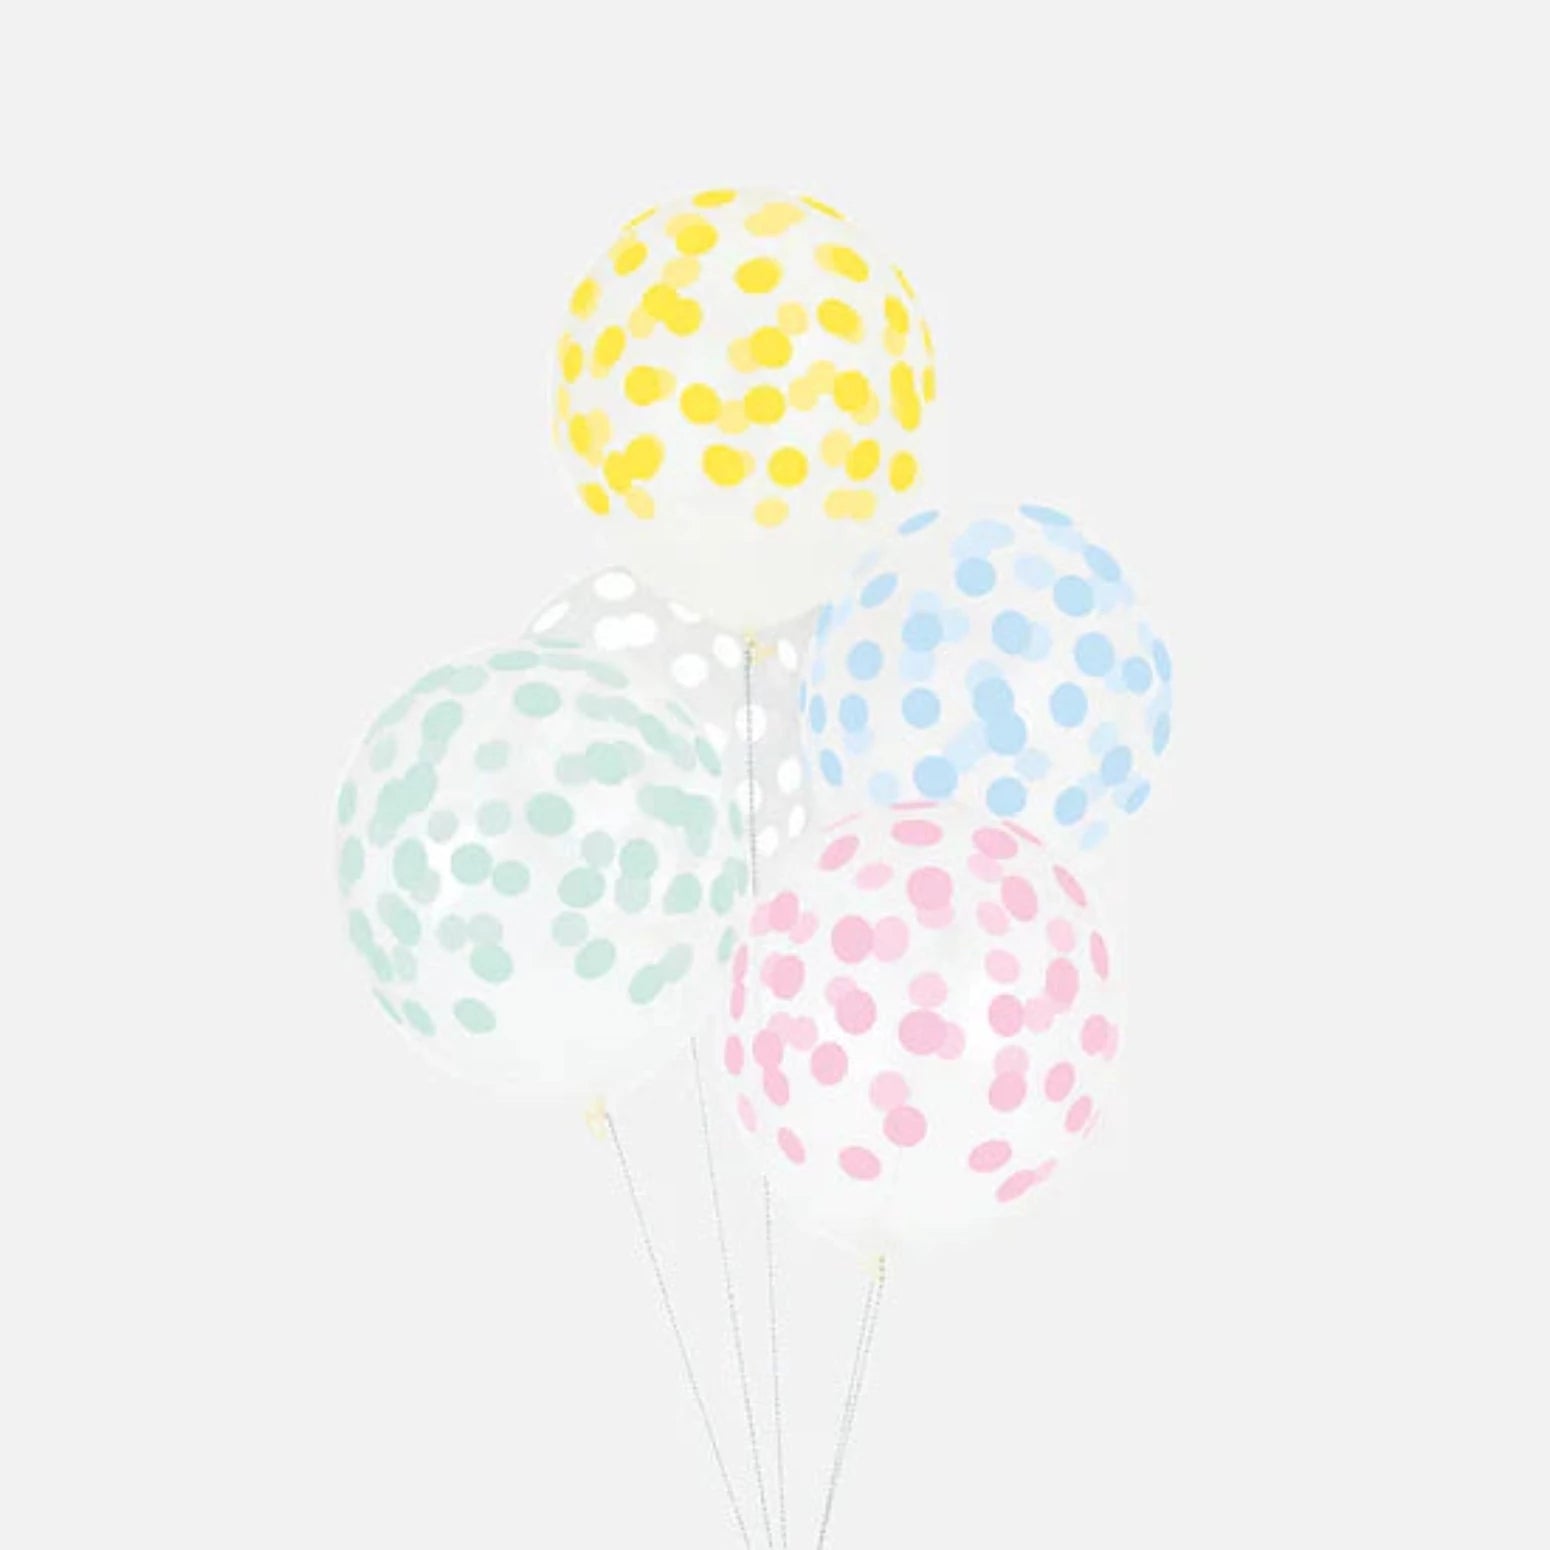 Luftballons mit Logo bedruckt - Elektrische Luftballonpumpe